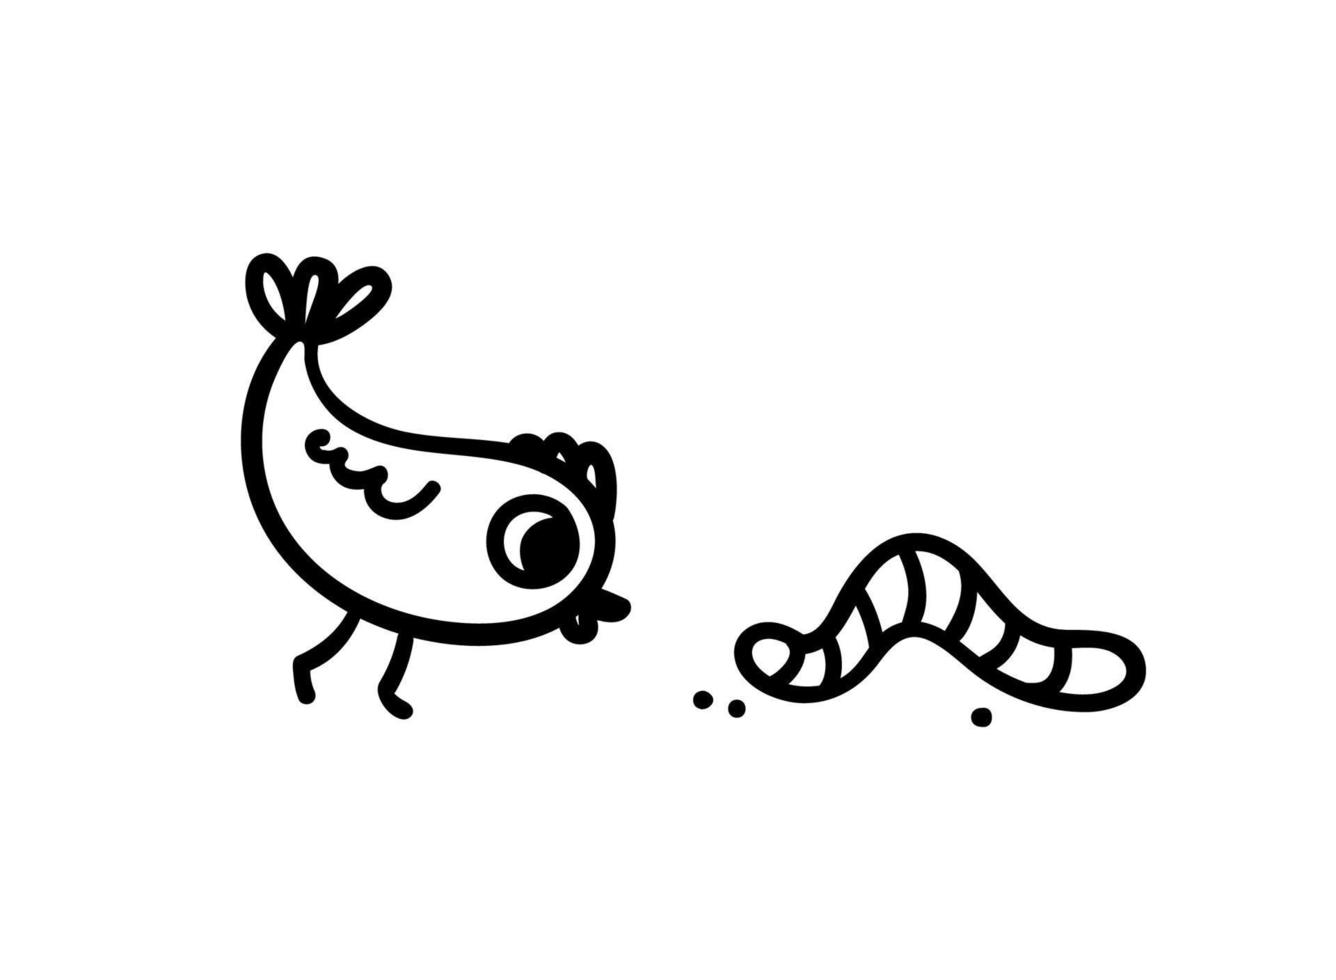 un' carino pulcino orologi il strisciando verme. scarabocchio illustrazione di un' uccello giocando con un' verme o vuole per mangiare esso. vettore schizzo di pollame e alimentazione isolato su bianca sfondo.